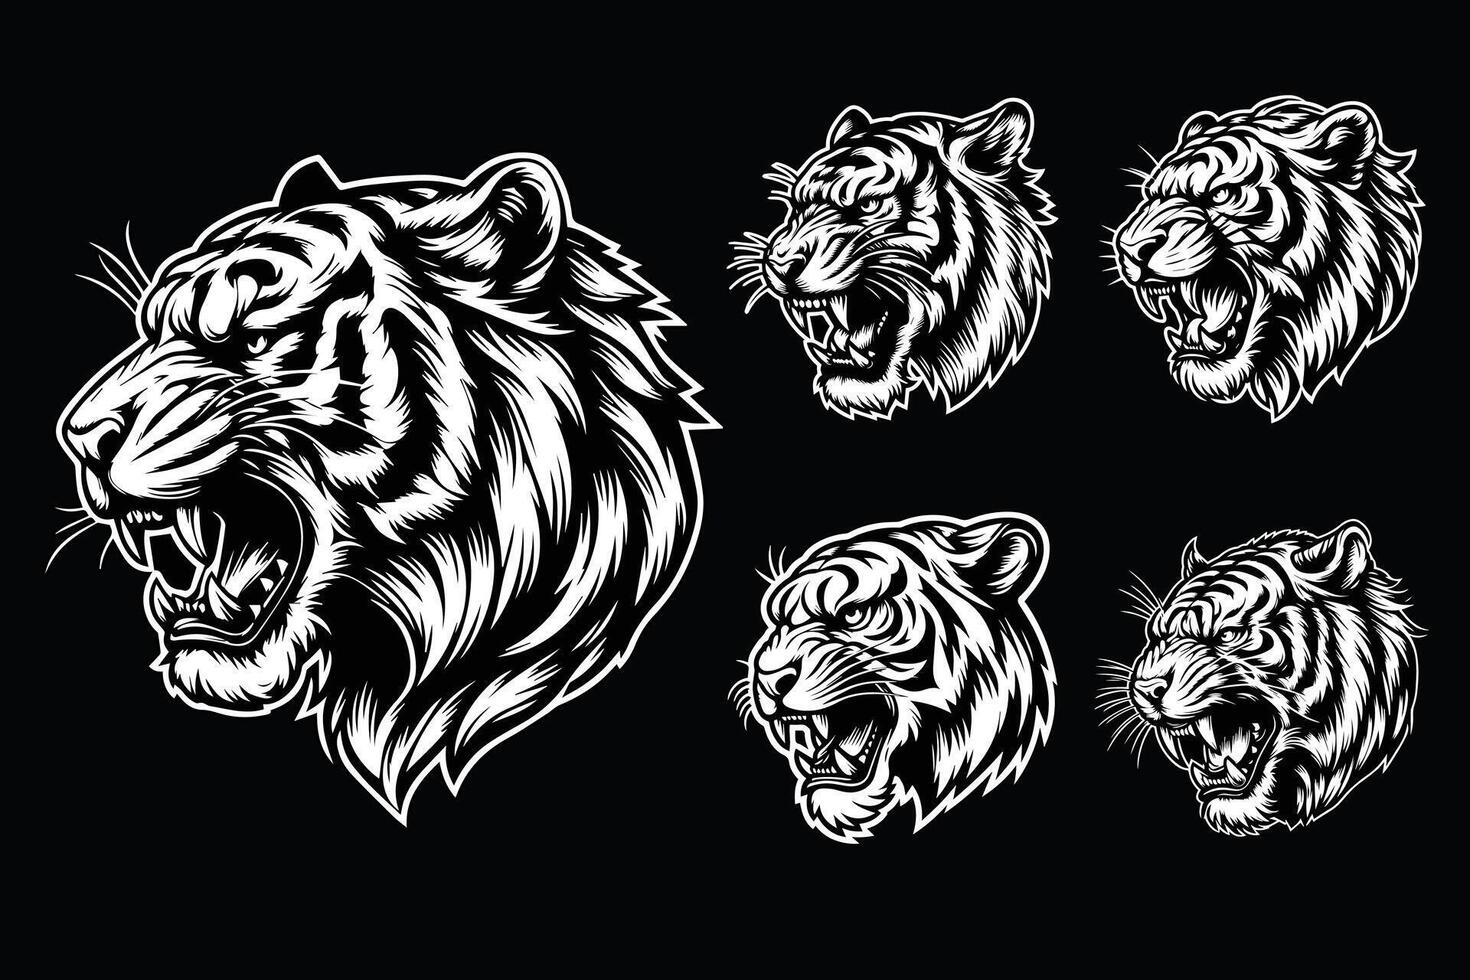 donker kunst boos beest tijger hoofd zwart en wit illustratie vector